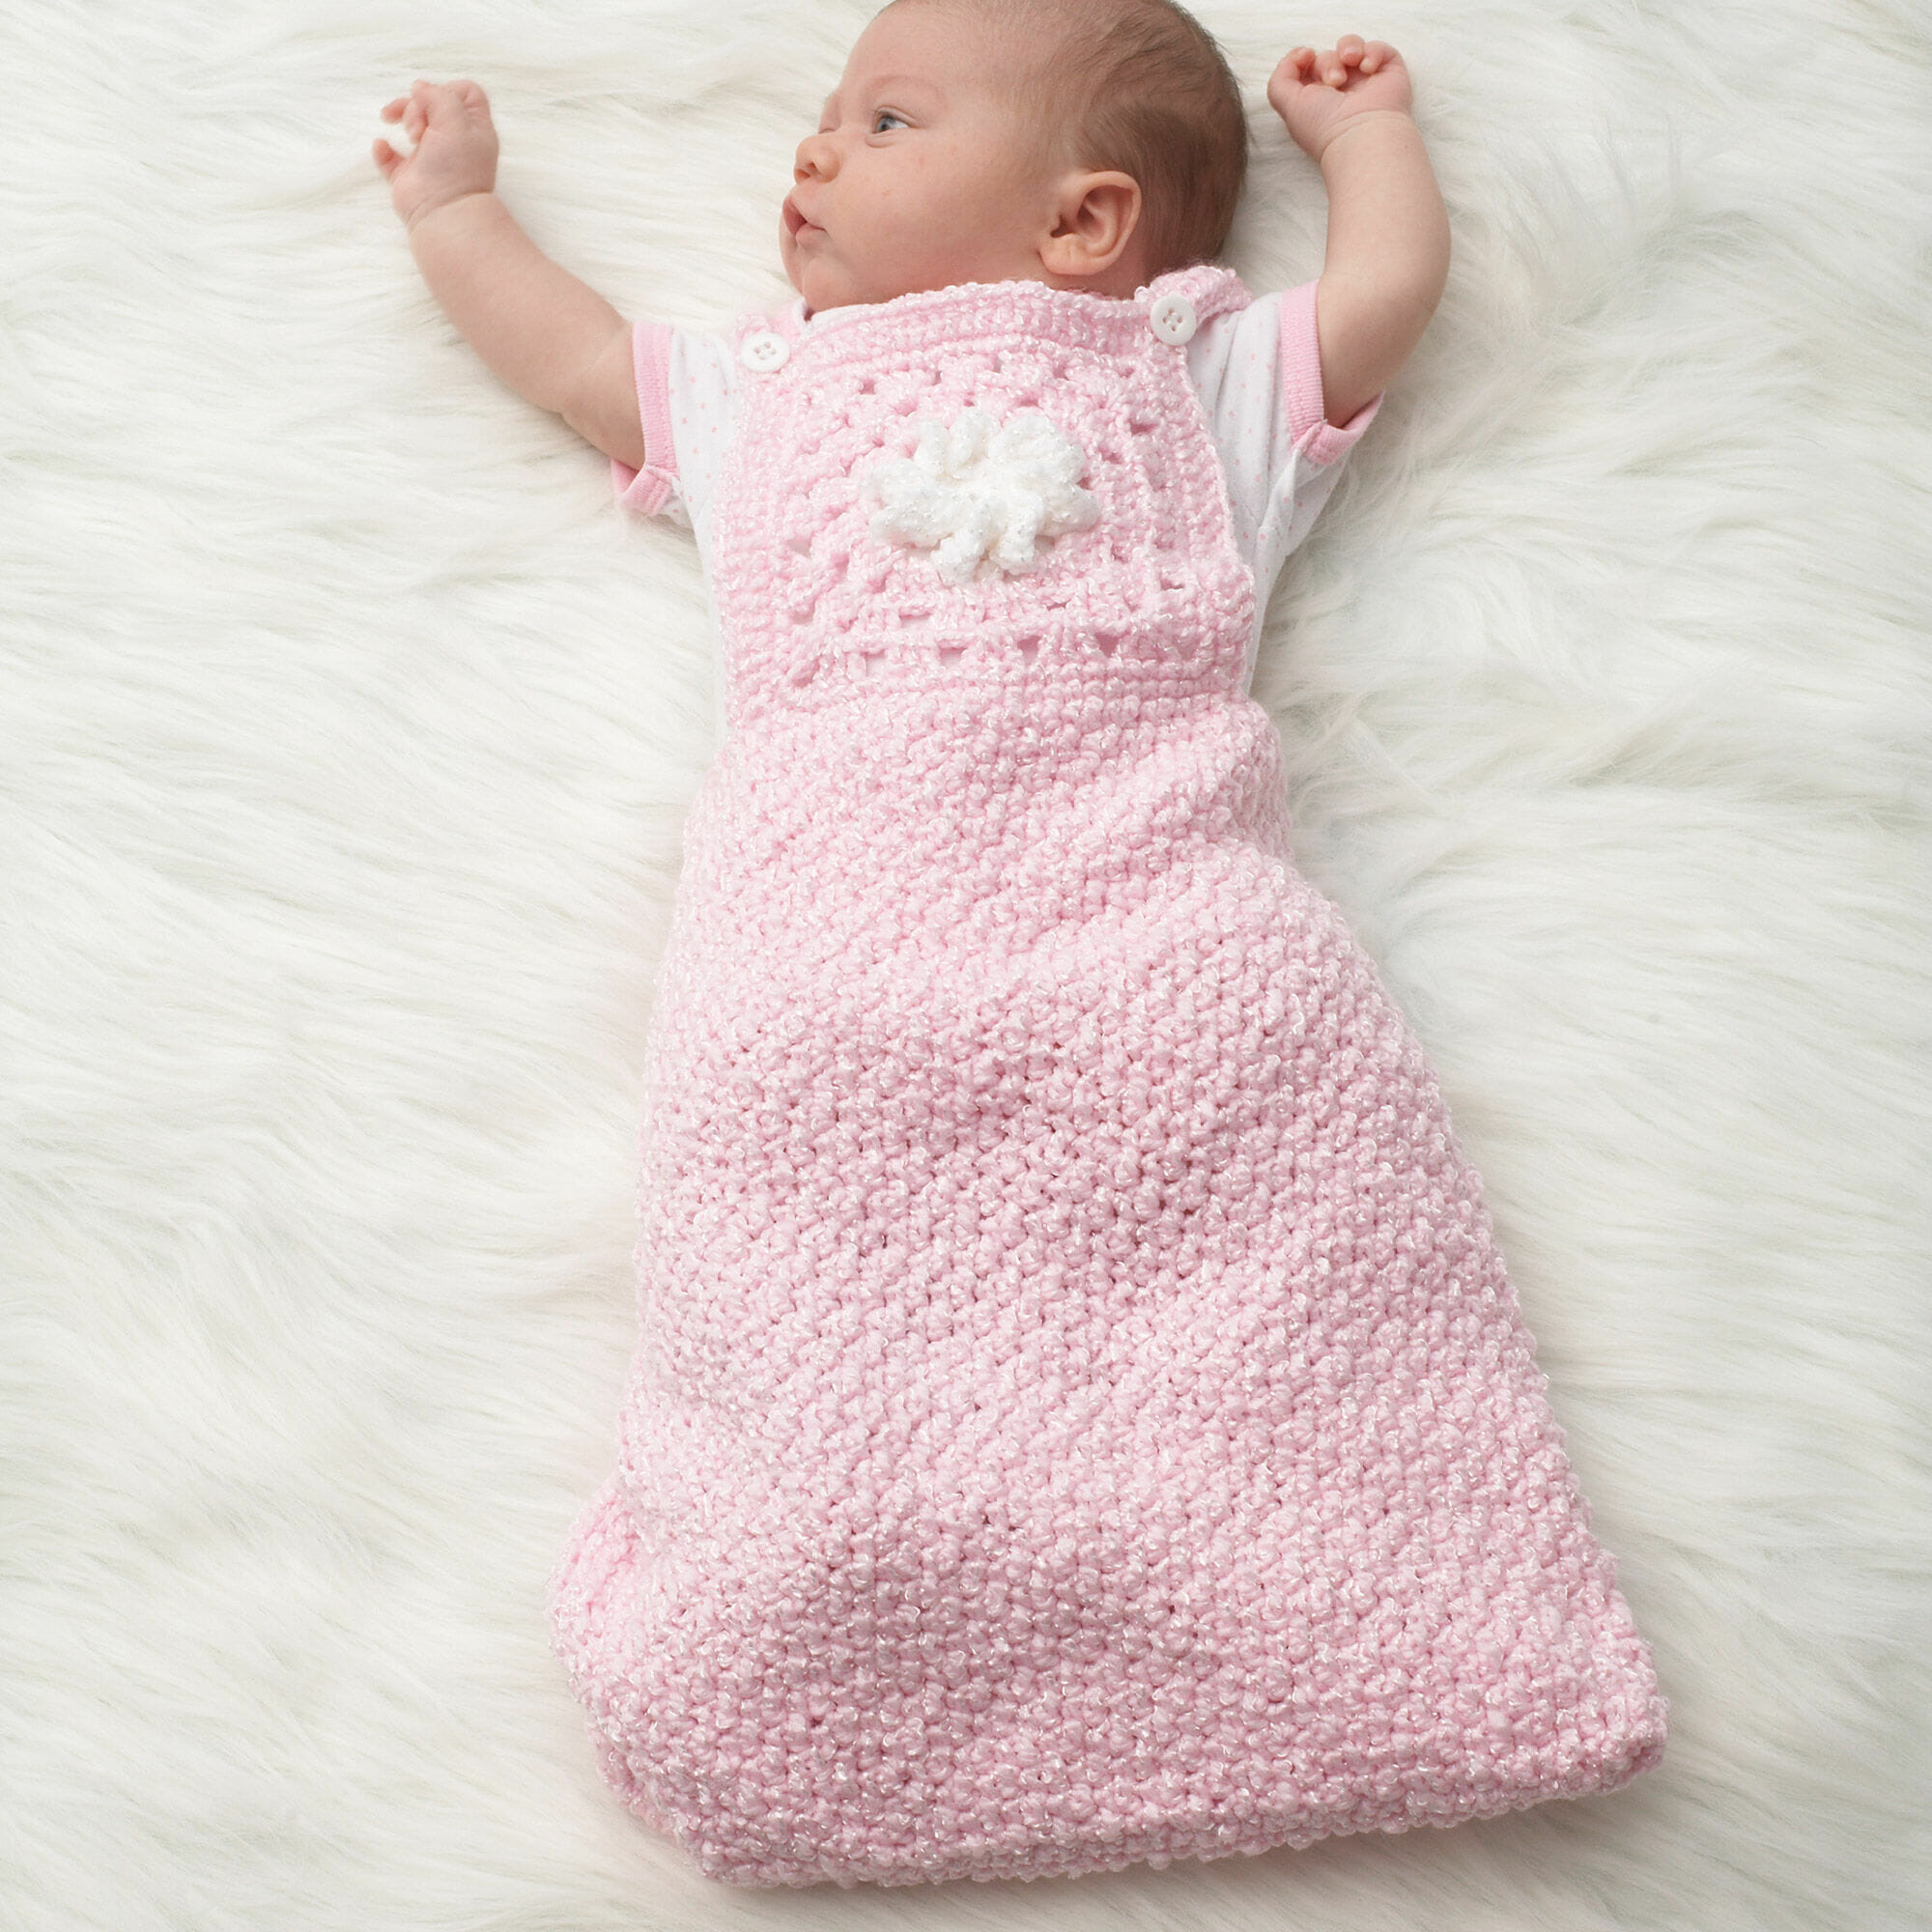 Certificado carolino virtud PATRÓN GRATIS Saco de Dormir para Bebé a Crochet